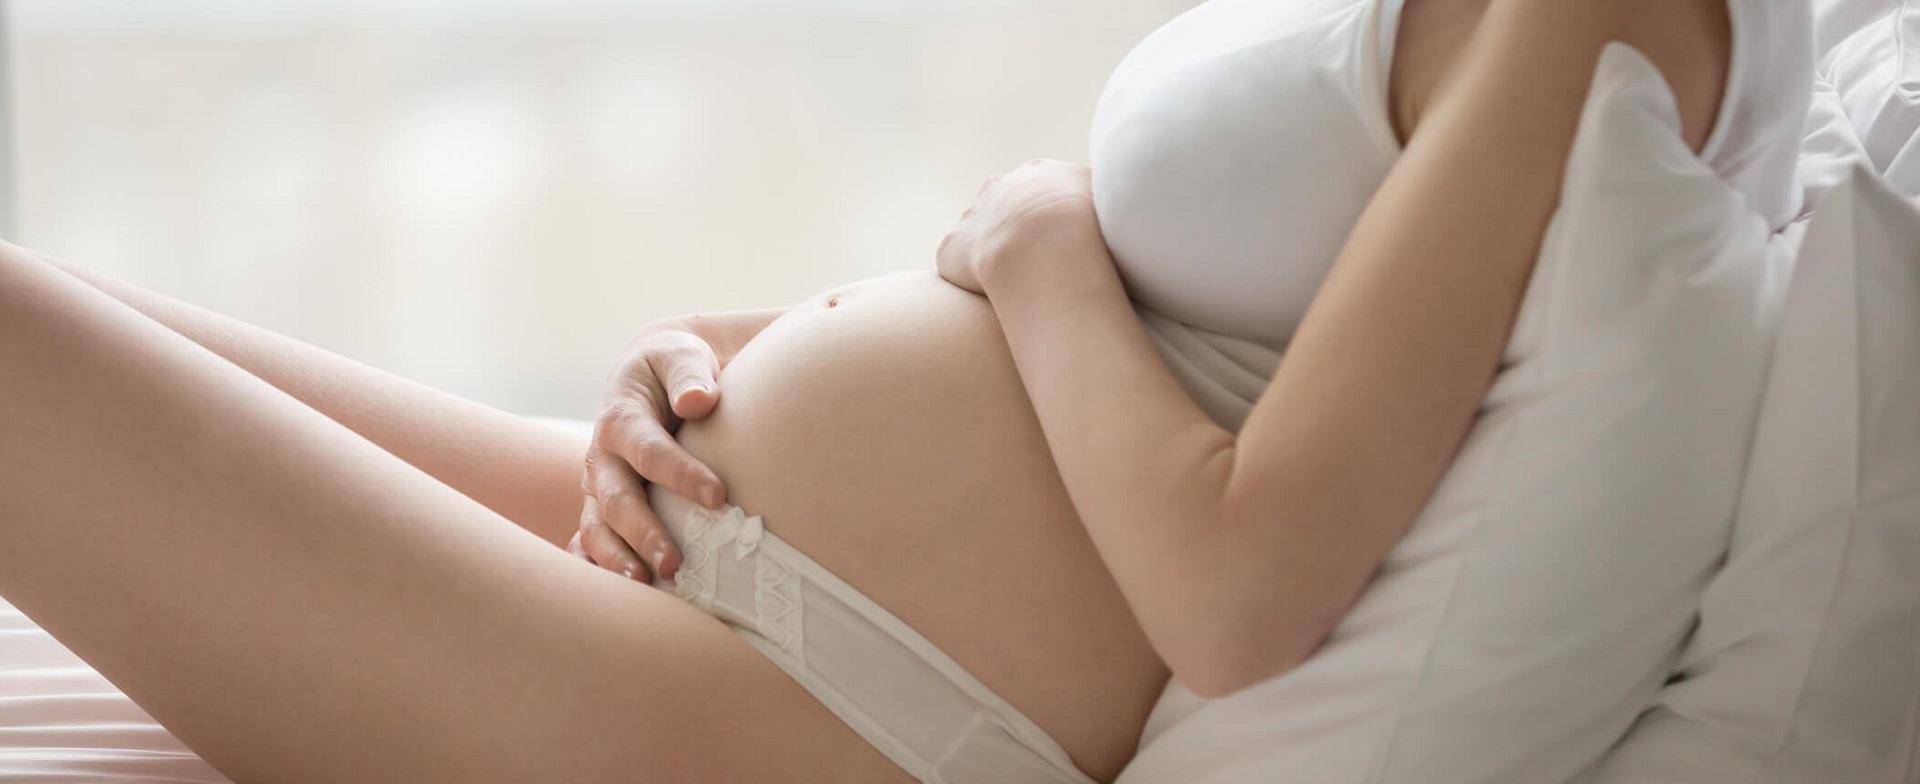 Девять вопросов (и ответов) о шевелениях плода во время беременности